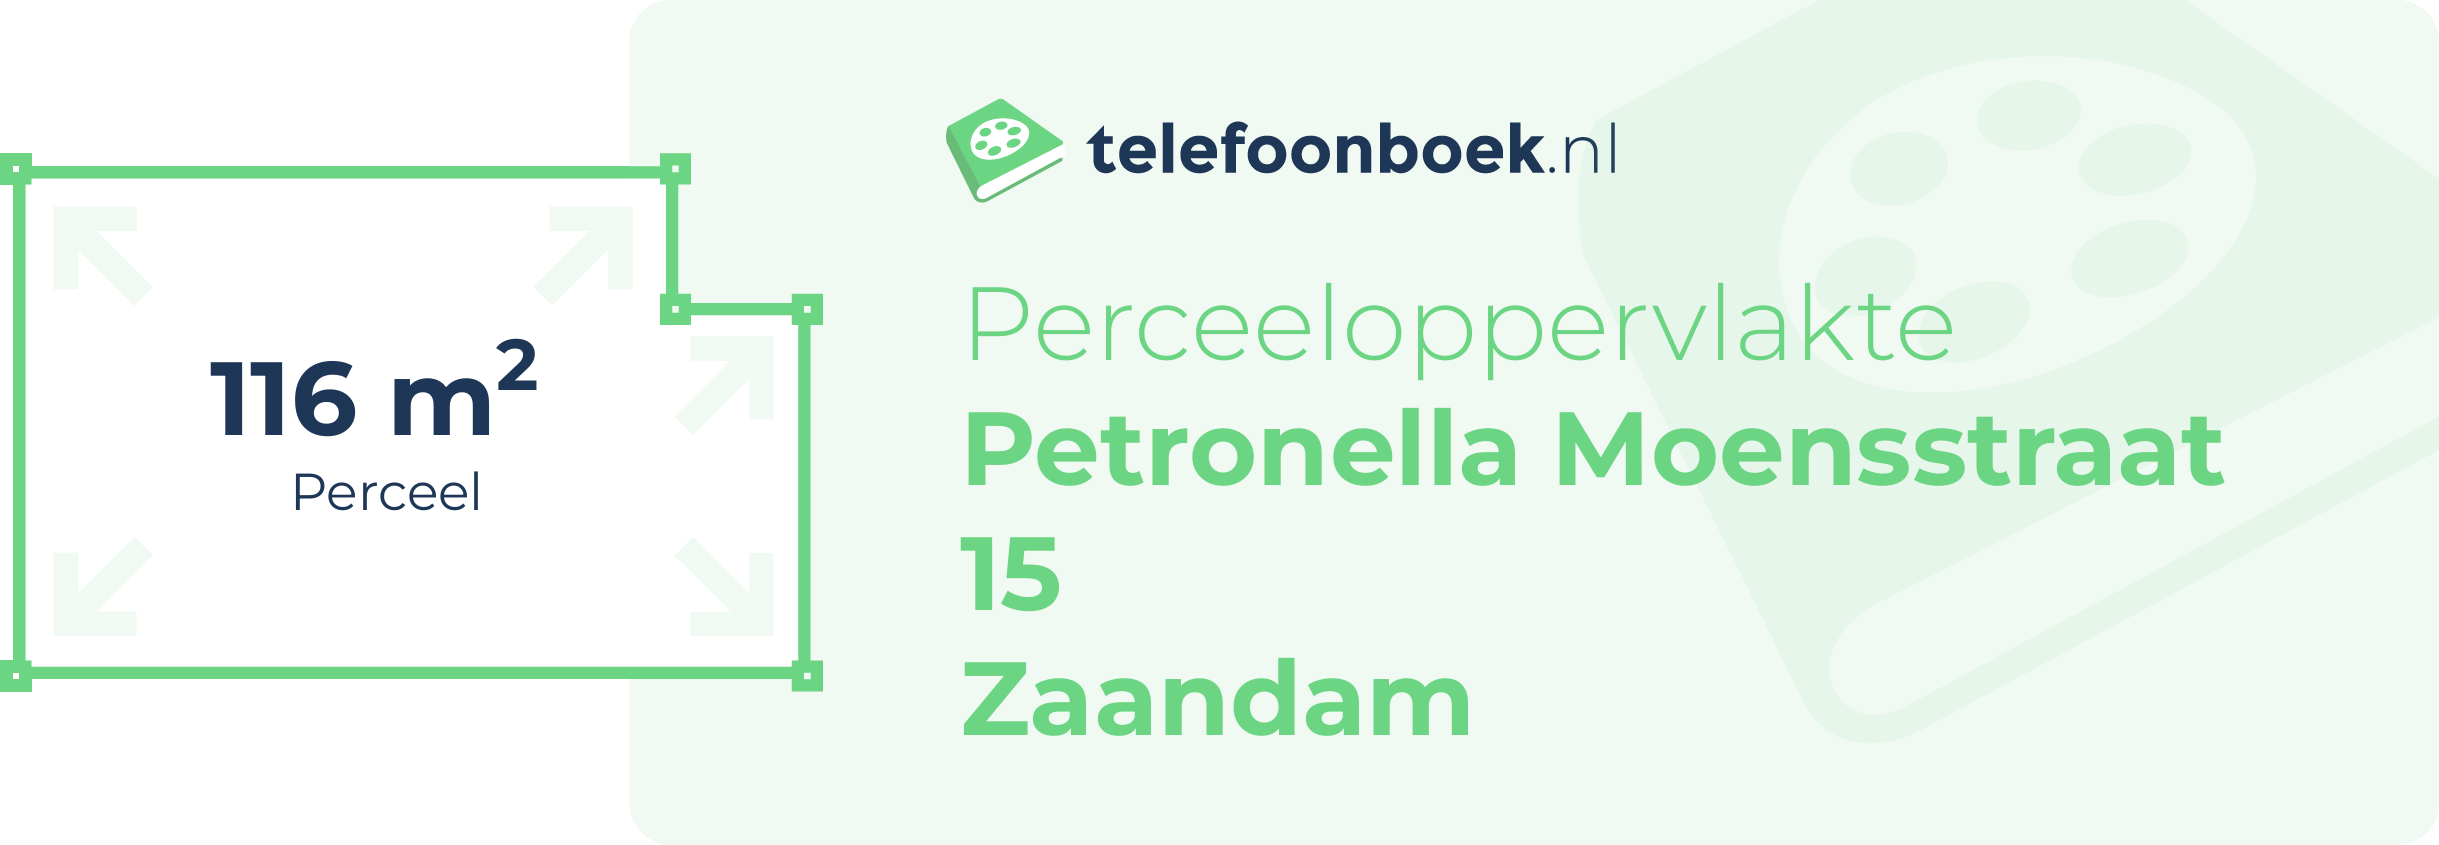 Perceeloppervlakte Petronella Moensstraat 15 Zaandam